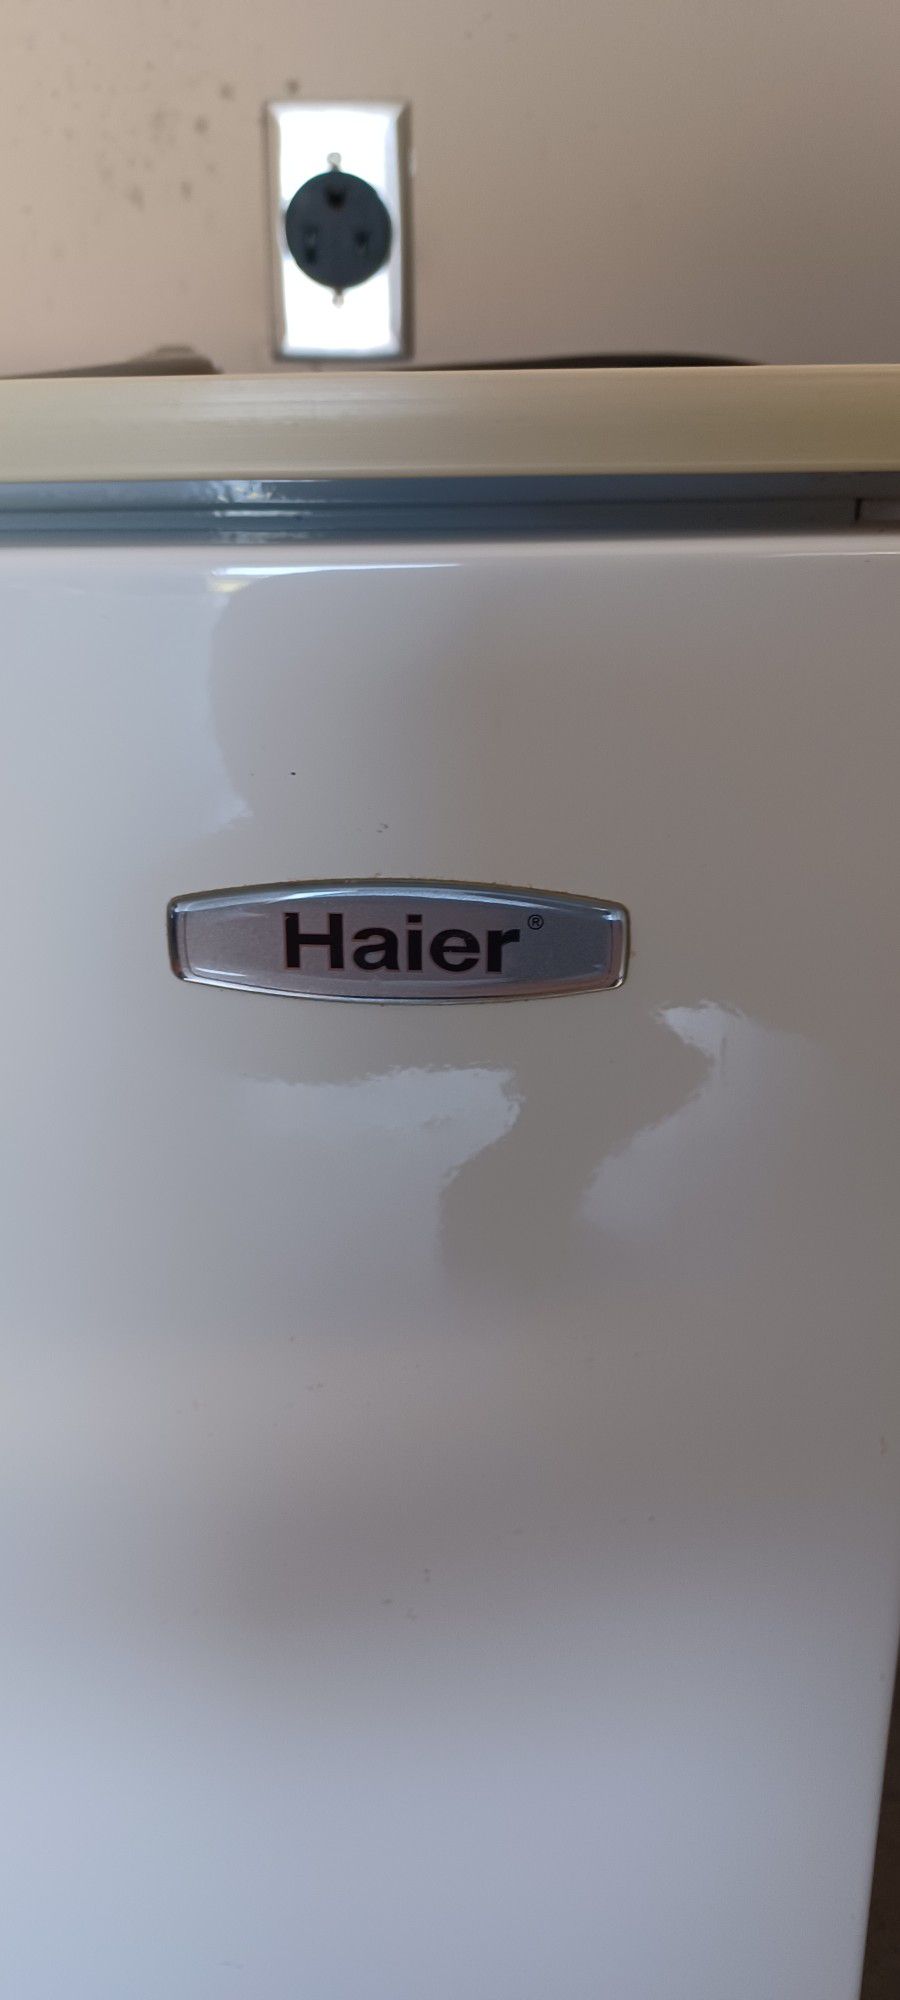 Haier Small Dorm Refrigerator